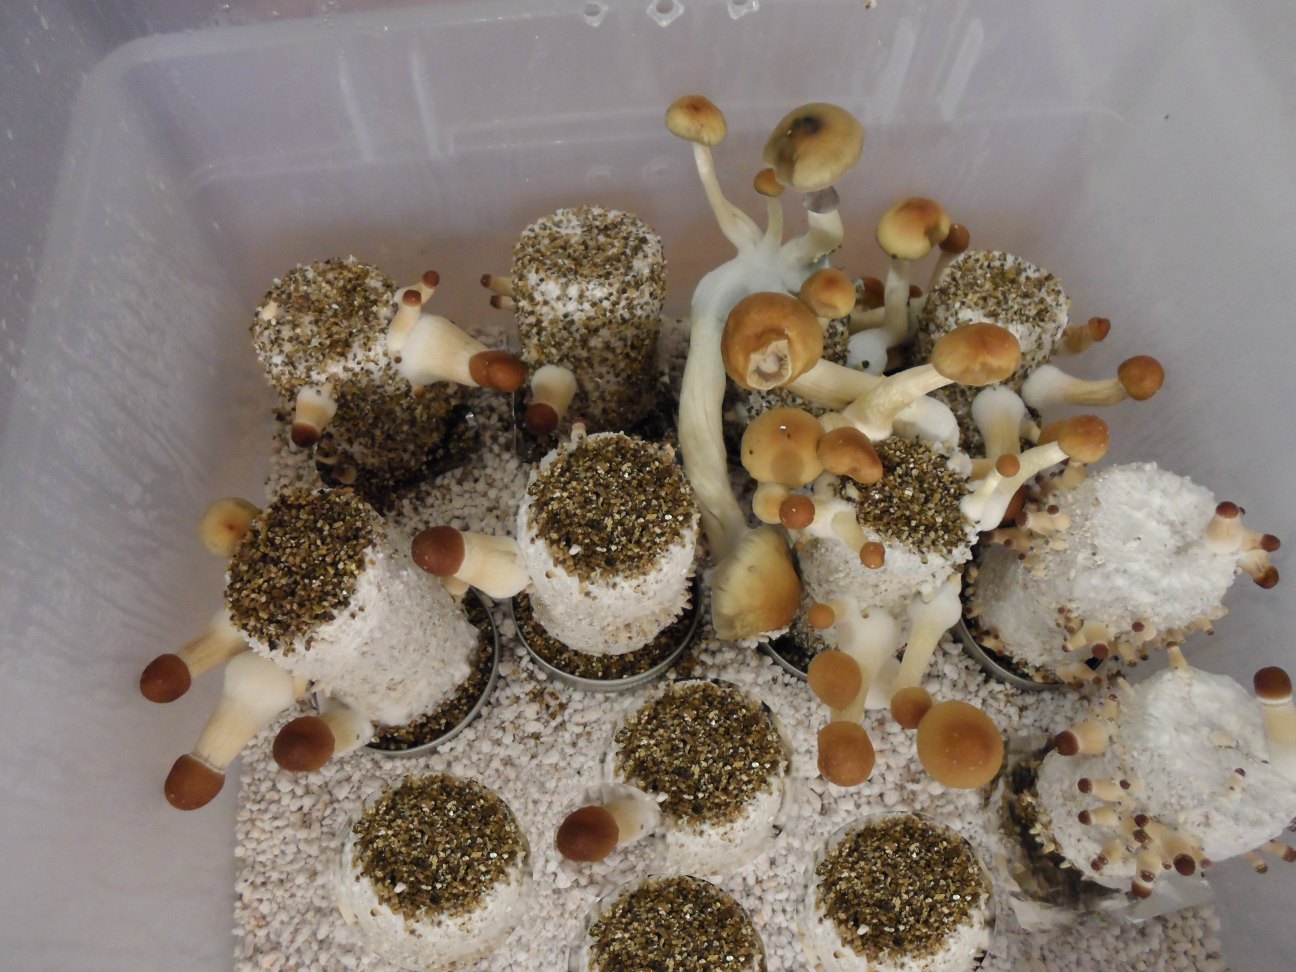 mushroom incubator brooklyn